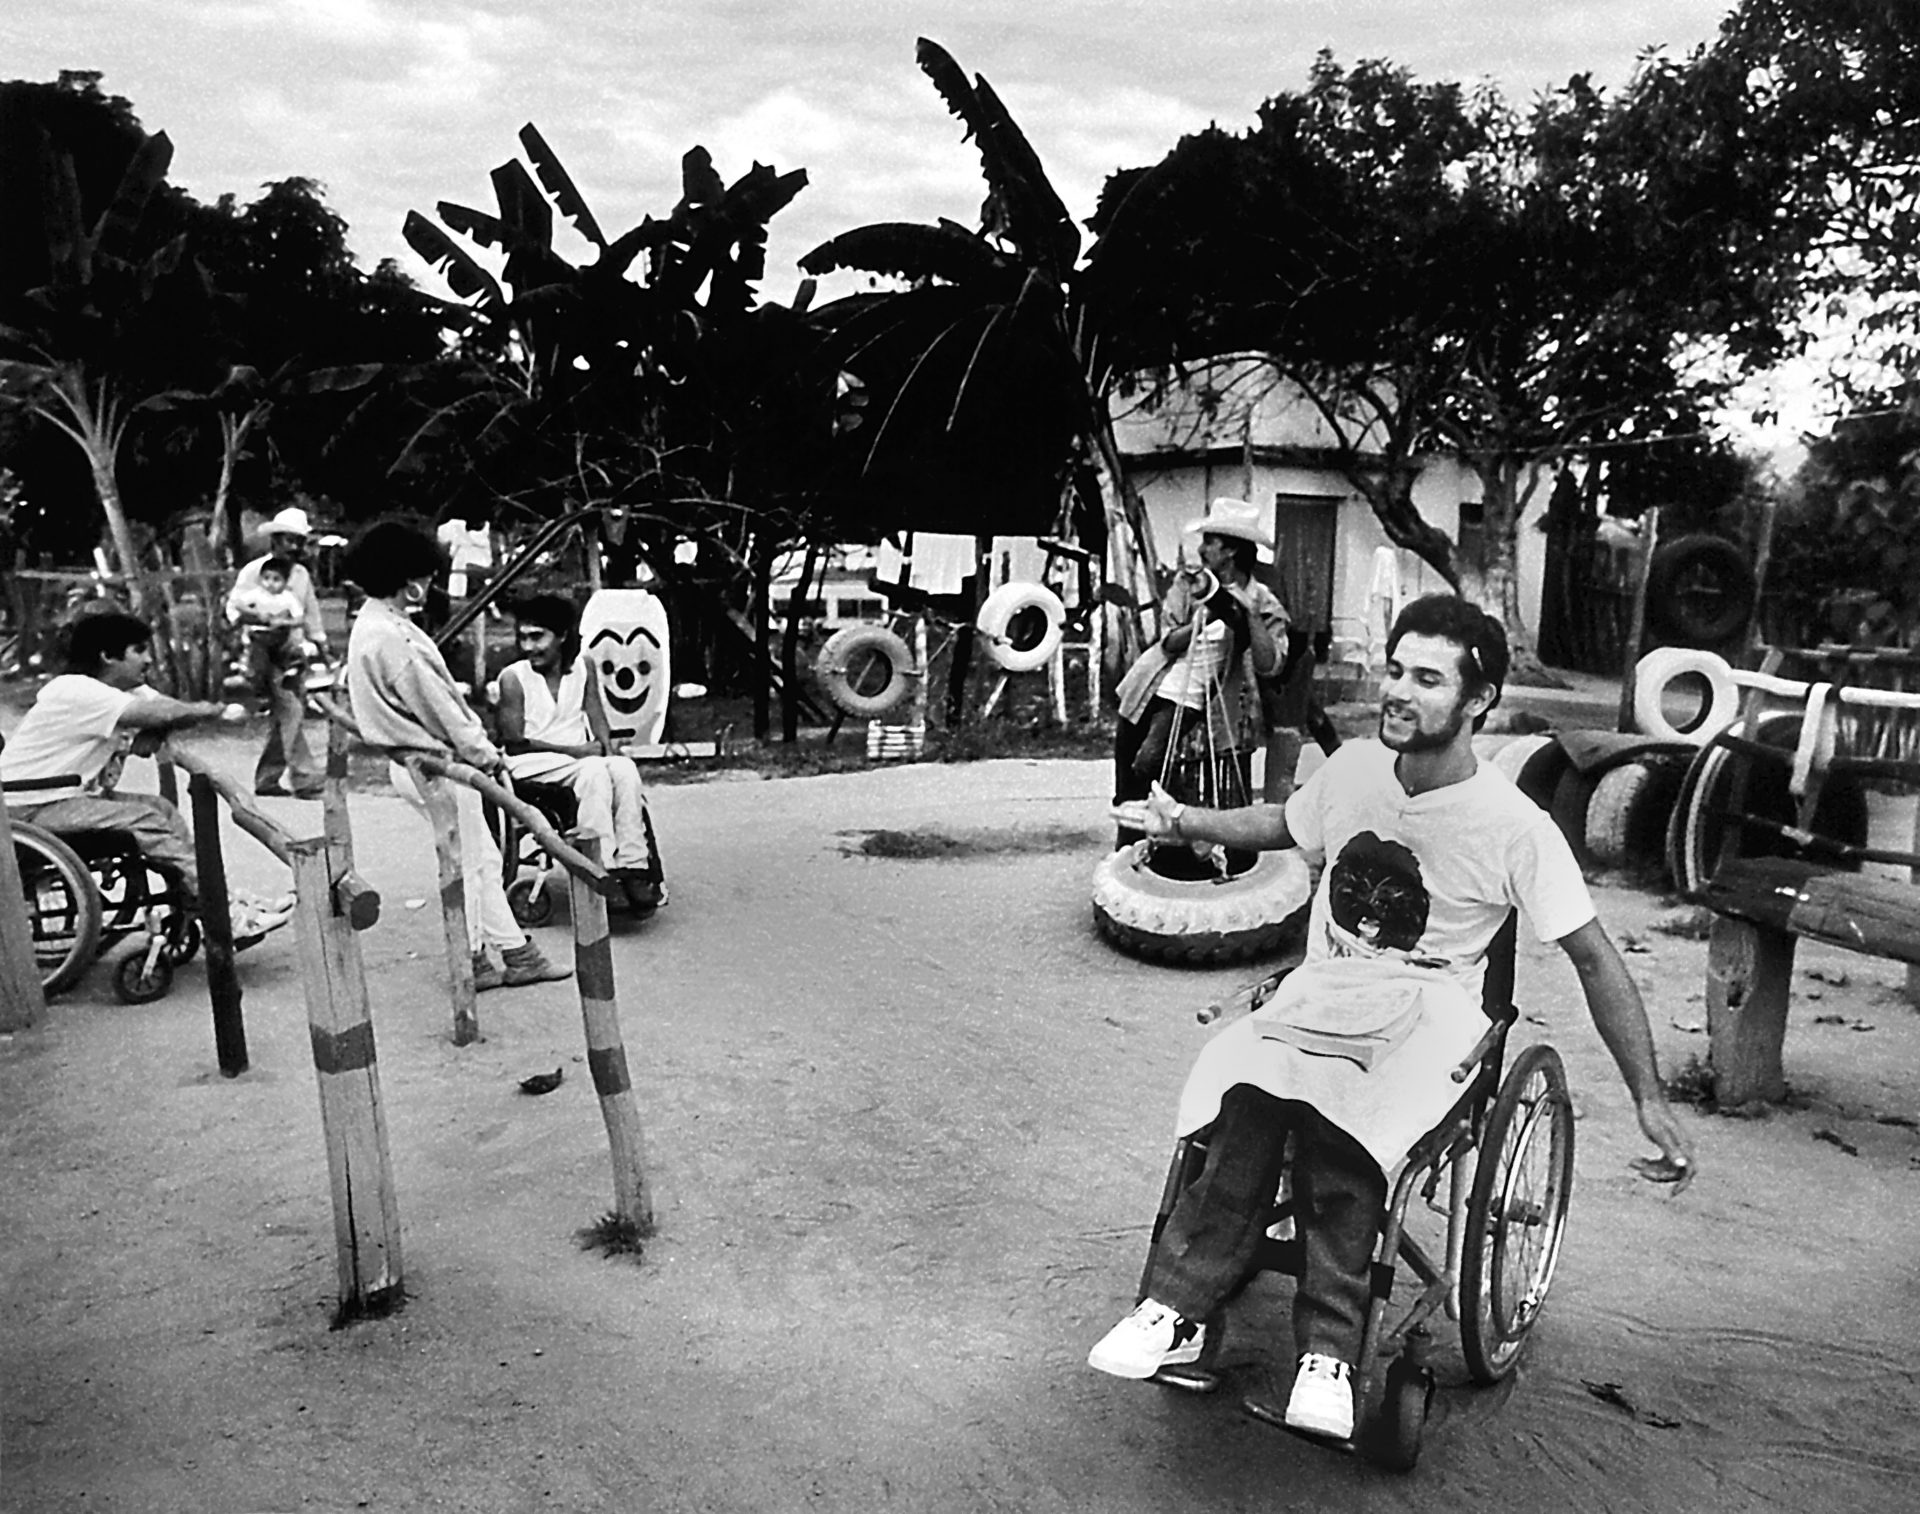 Al anochecer, el patio de recreo se llena de gente bailando de pie o en silla de ruedas, un carnaval que se ha vuelto un poco loco en la fina tradición de los surrealistas mexicanos.